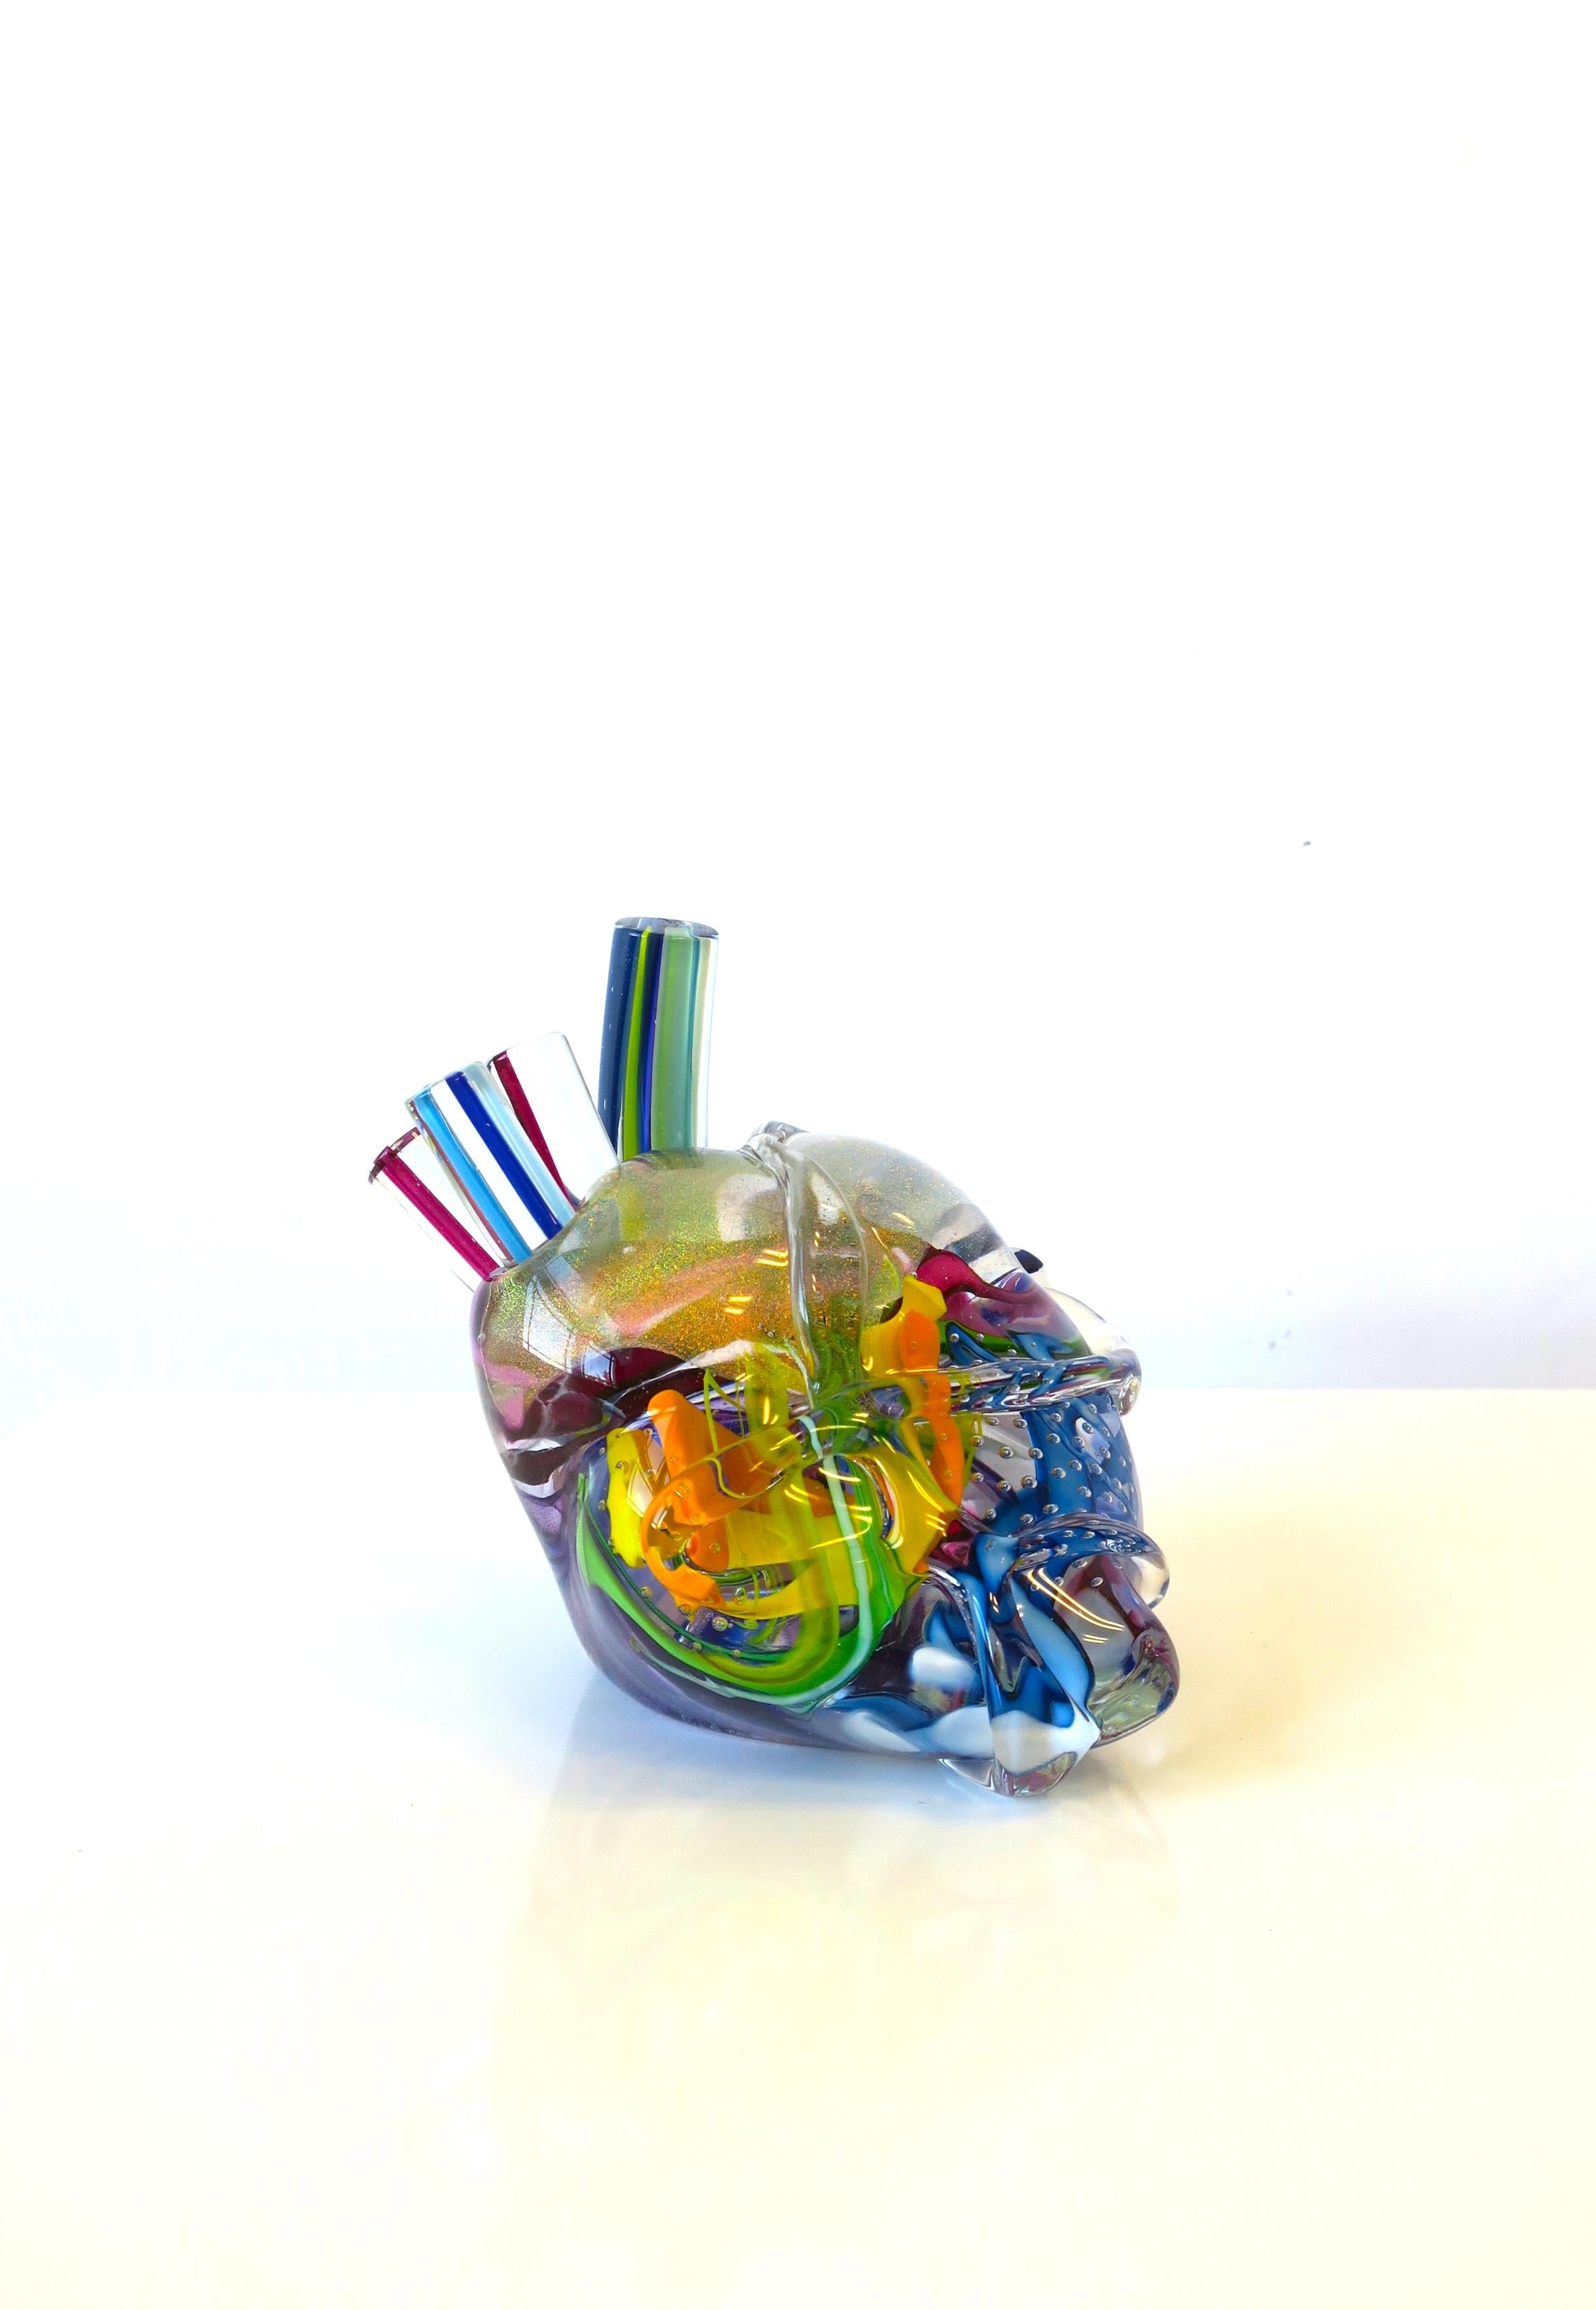 Heart of Glass Human Heart Art Glass Sculpture Signed by Artist 2